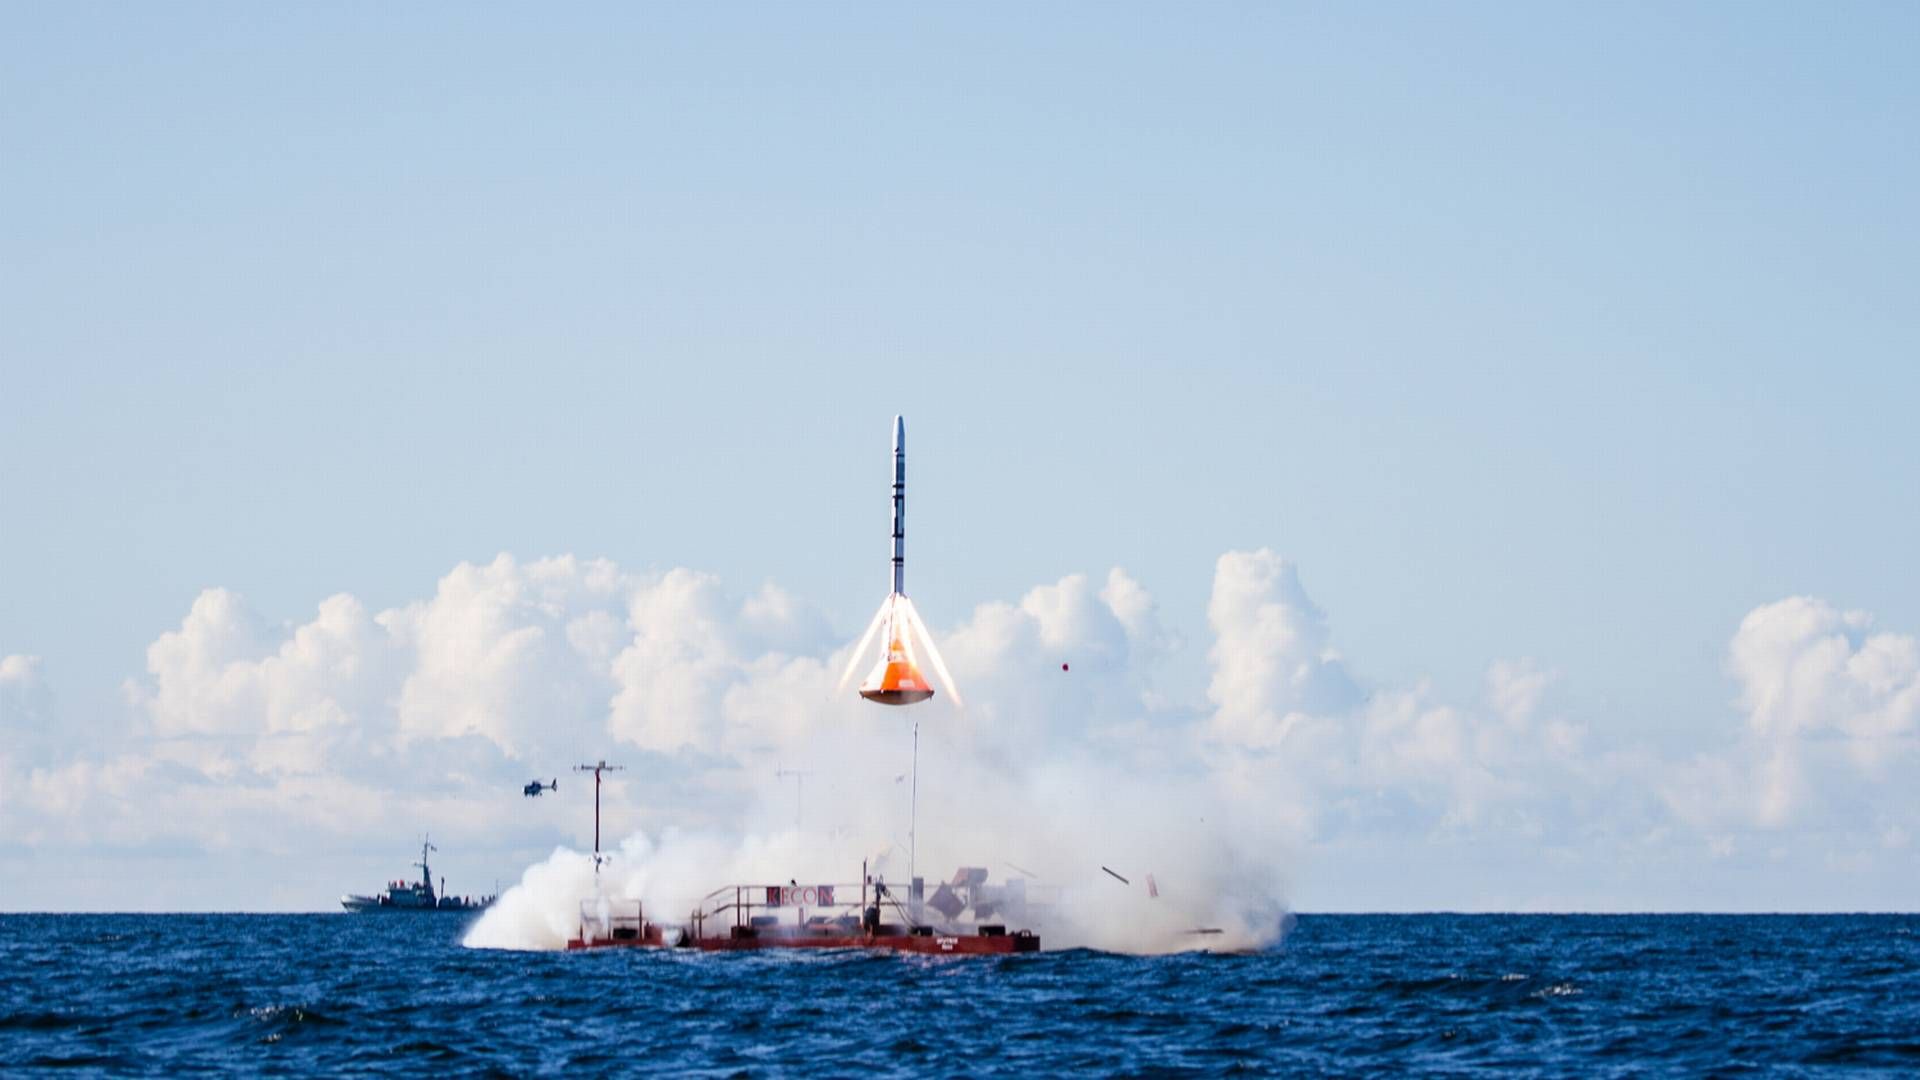 Copenhagen Suborbitals testede deres Smaragd-1 raket på Østersøen i 2012. | Foto: /ritzau/Thomas Pedersen